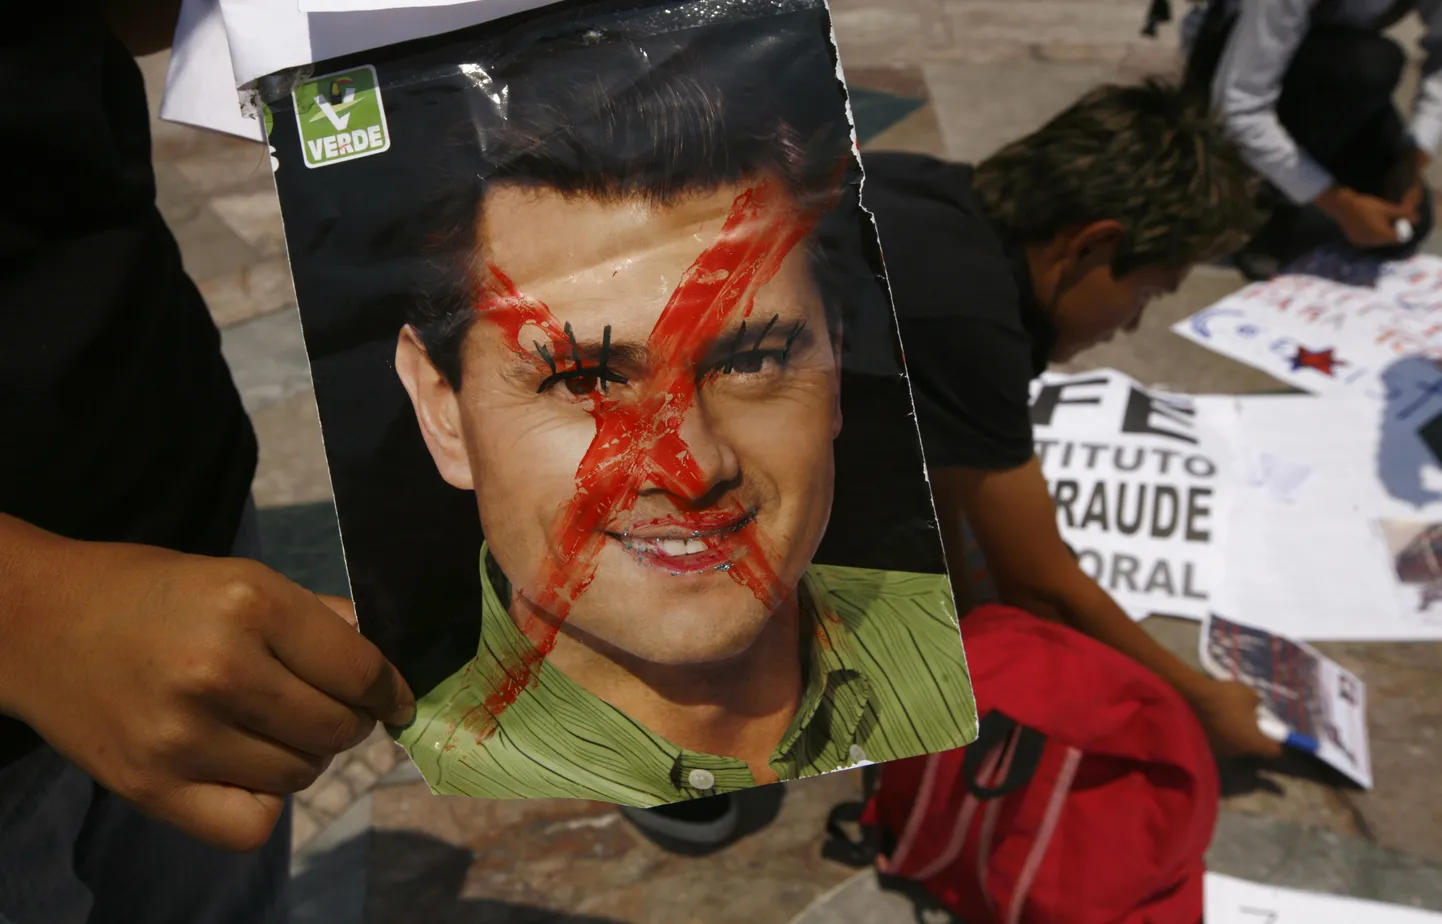 Mehhiko presidendiks valitud Enrique Peña Nieto maksis meeleavaldajate sõnul positiivse meediakajastuse eest.